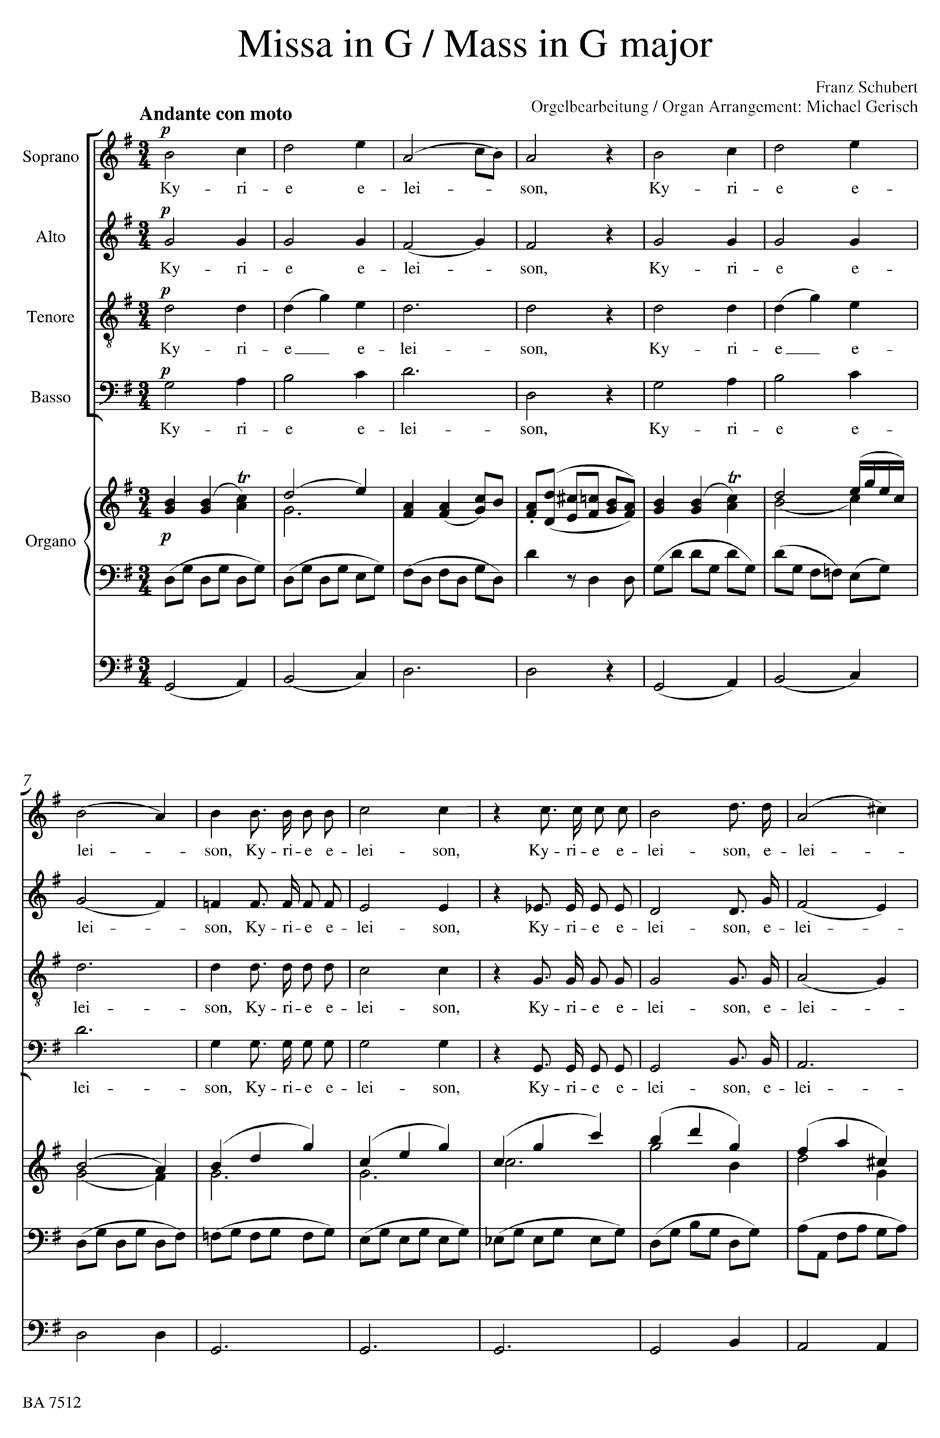 Schubert Missa G major D 167 (Arranged for Soloists, Choir and Organ)